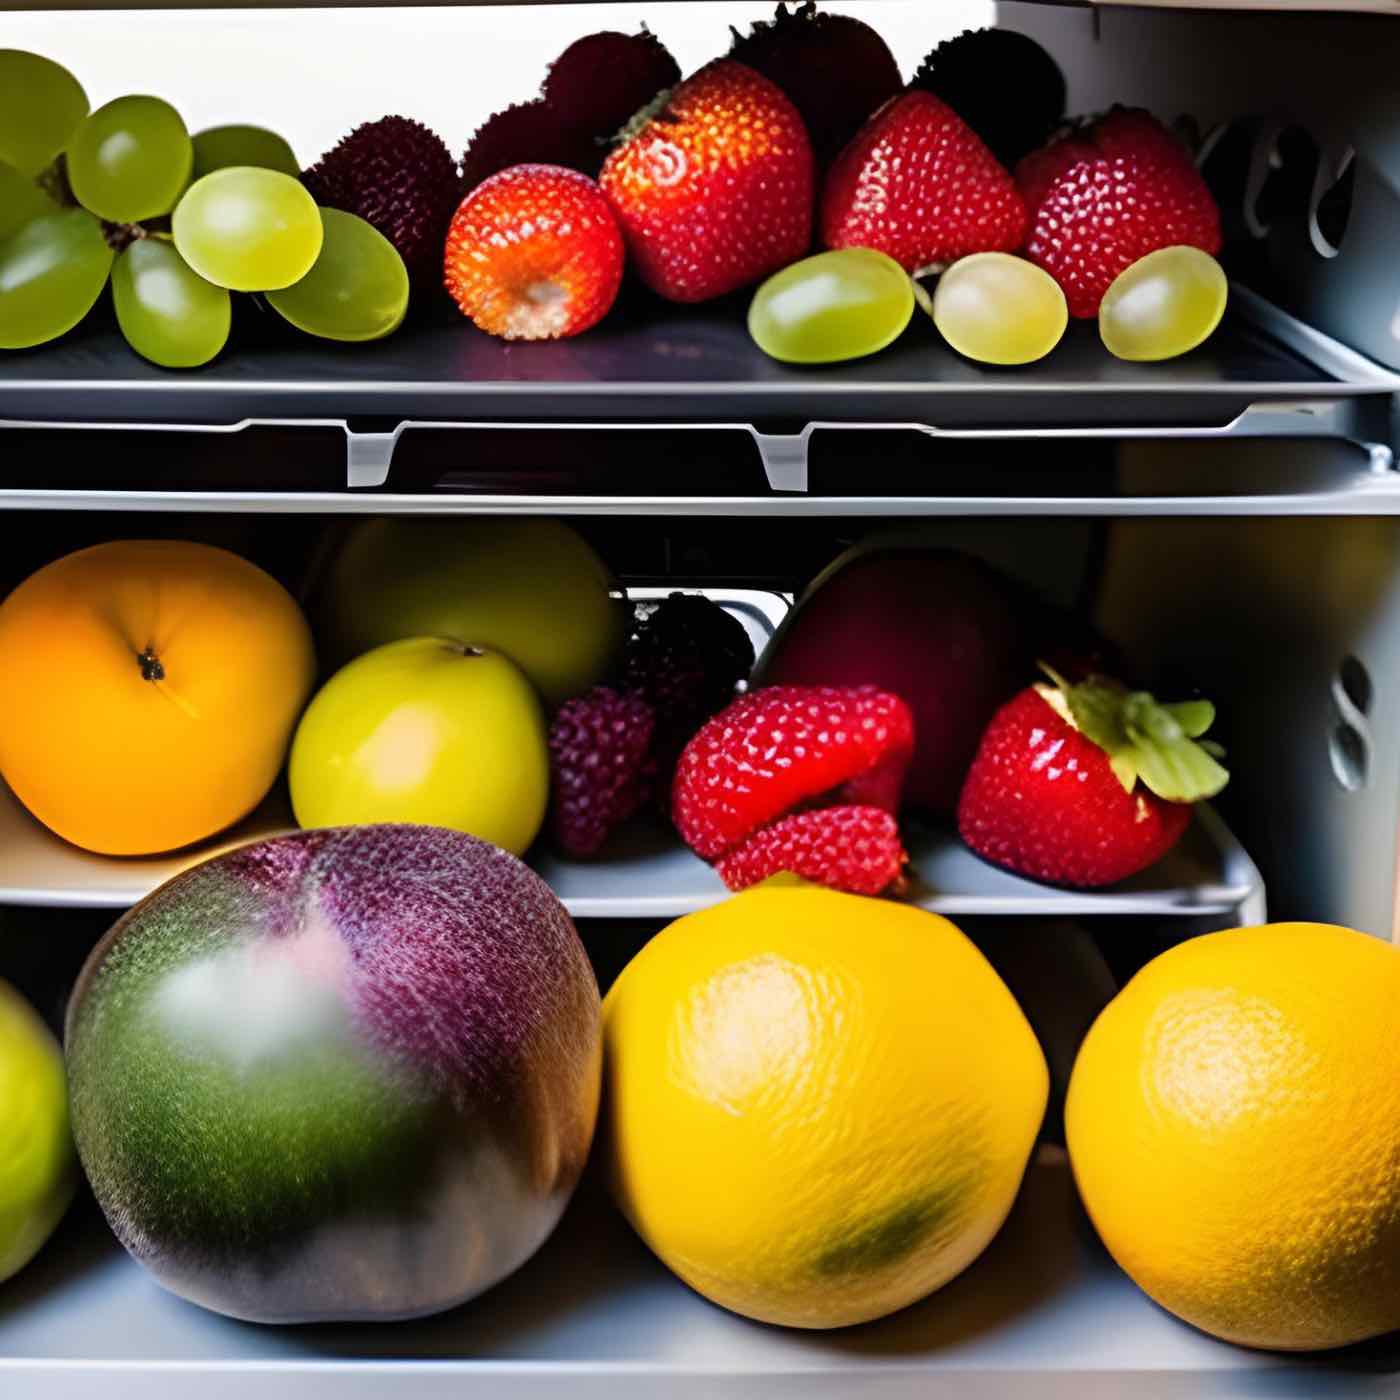 storing Produce in crisper drawer